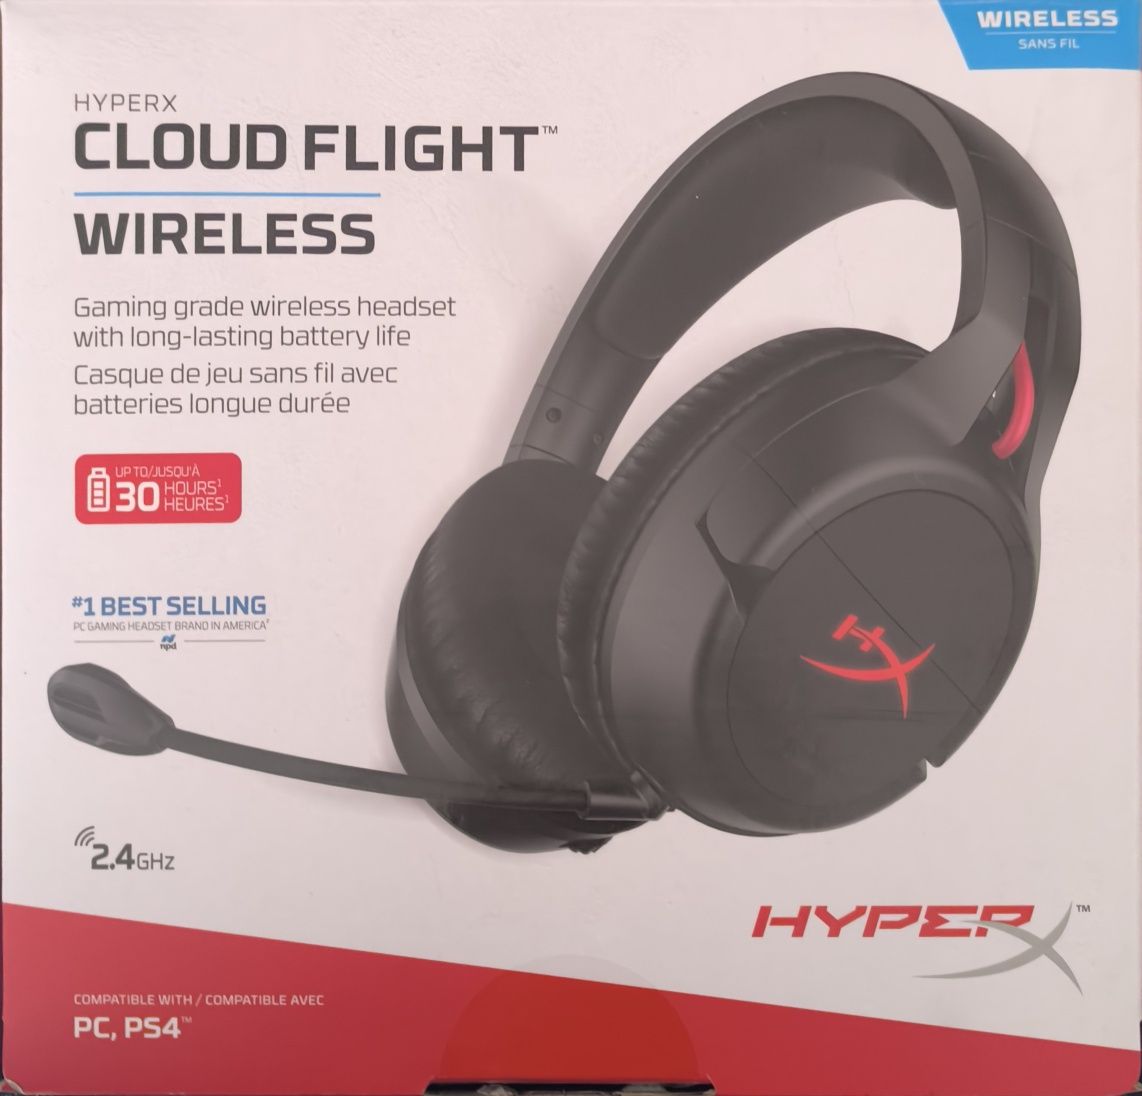 Hyperx cloud flight wireless